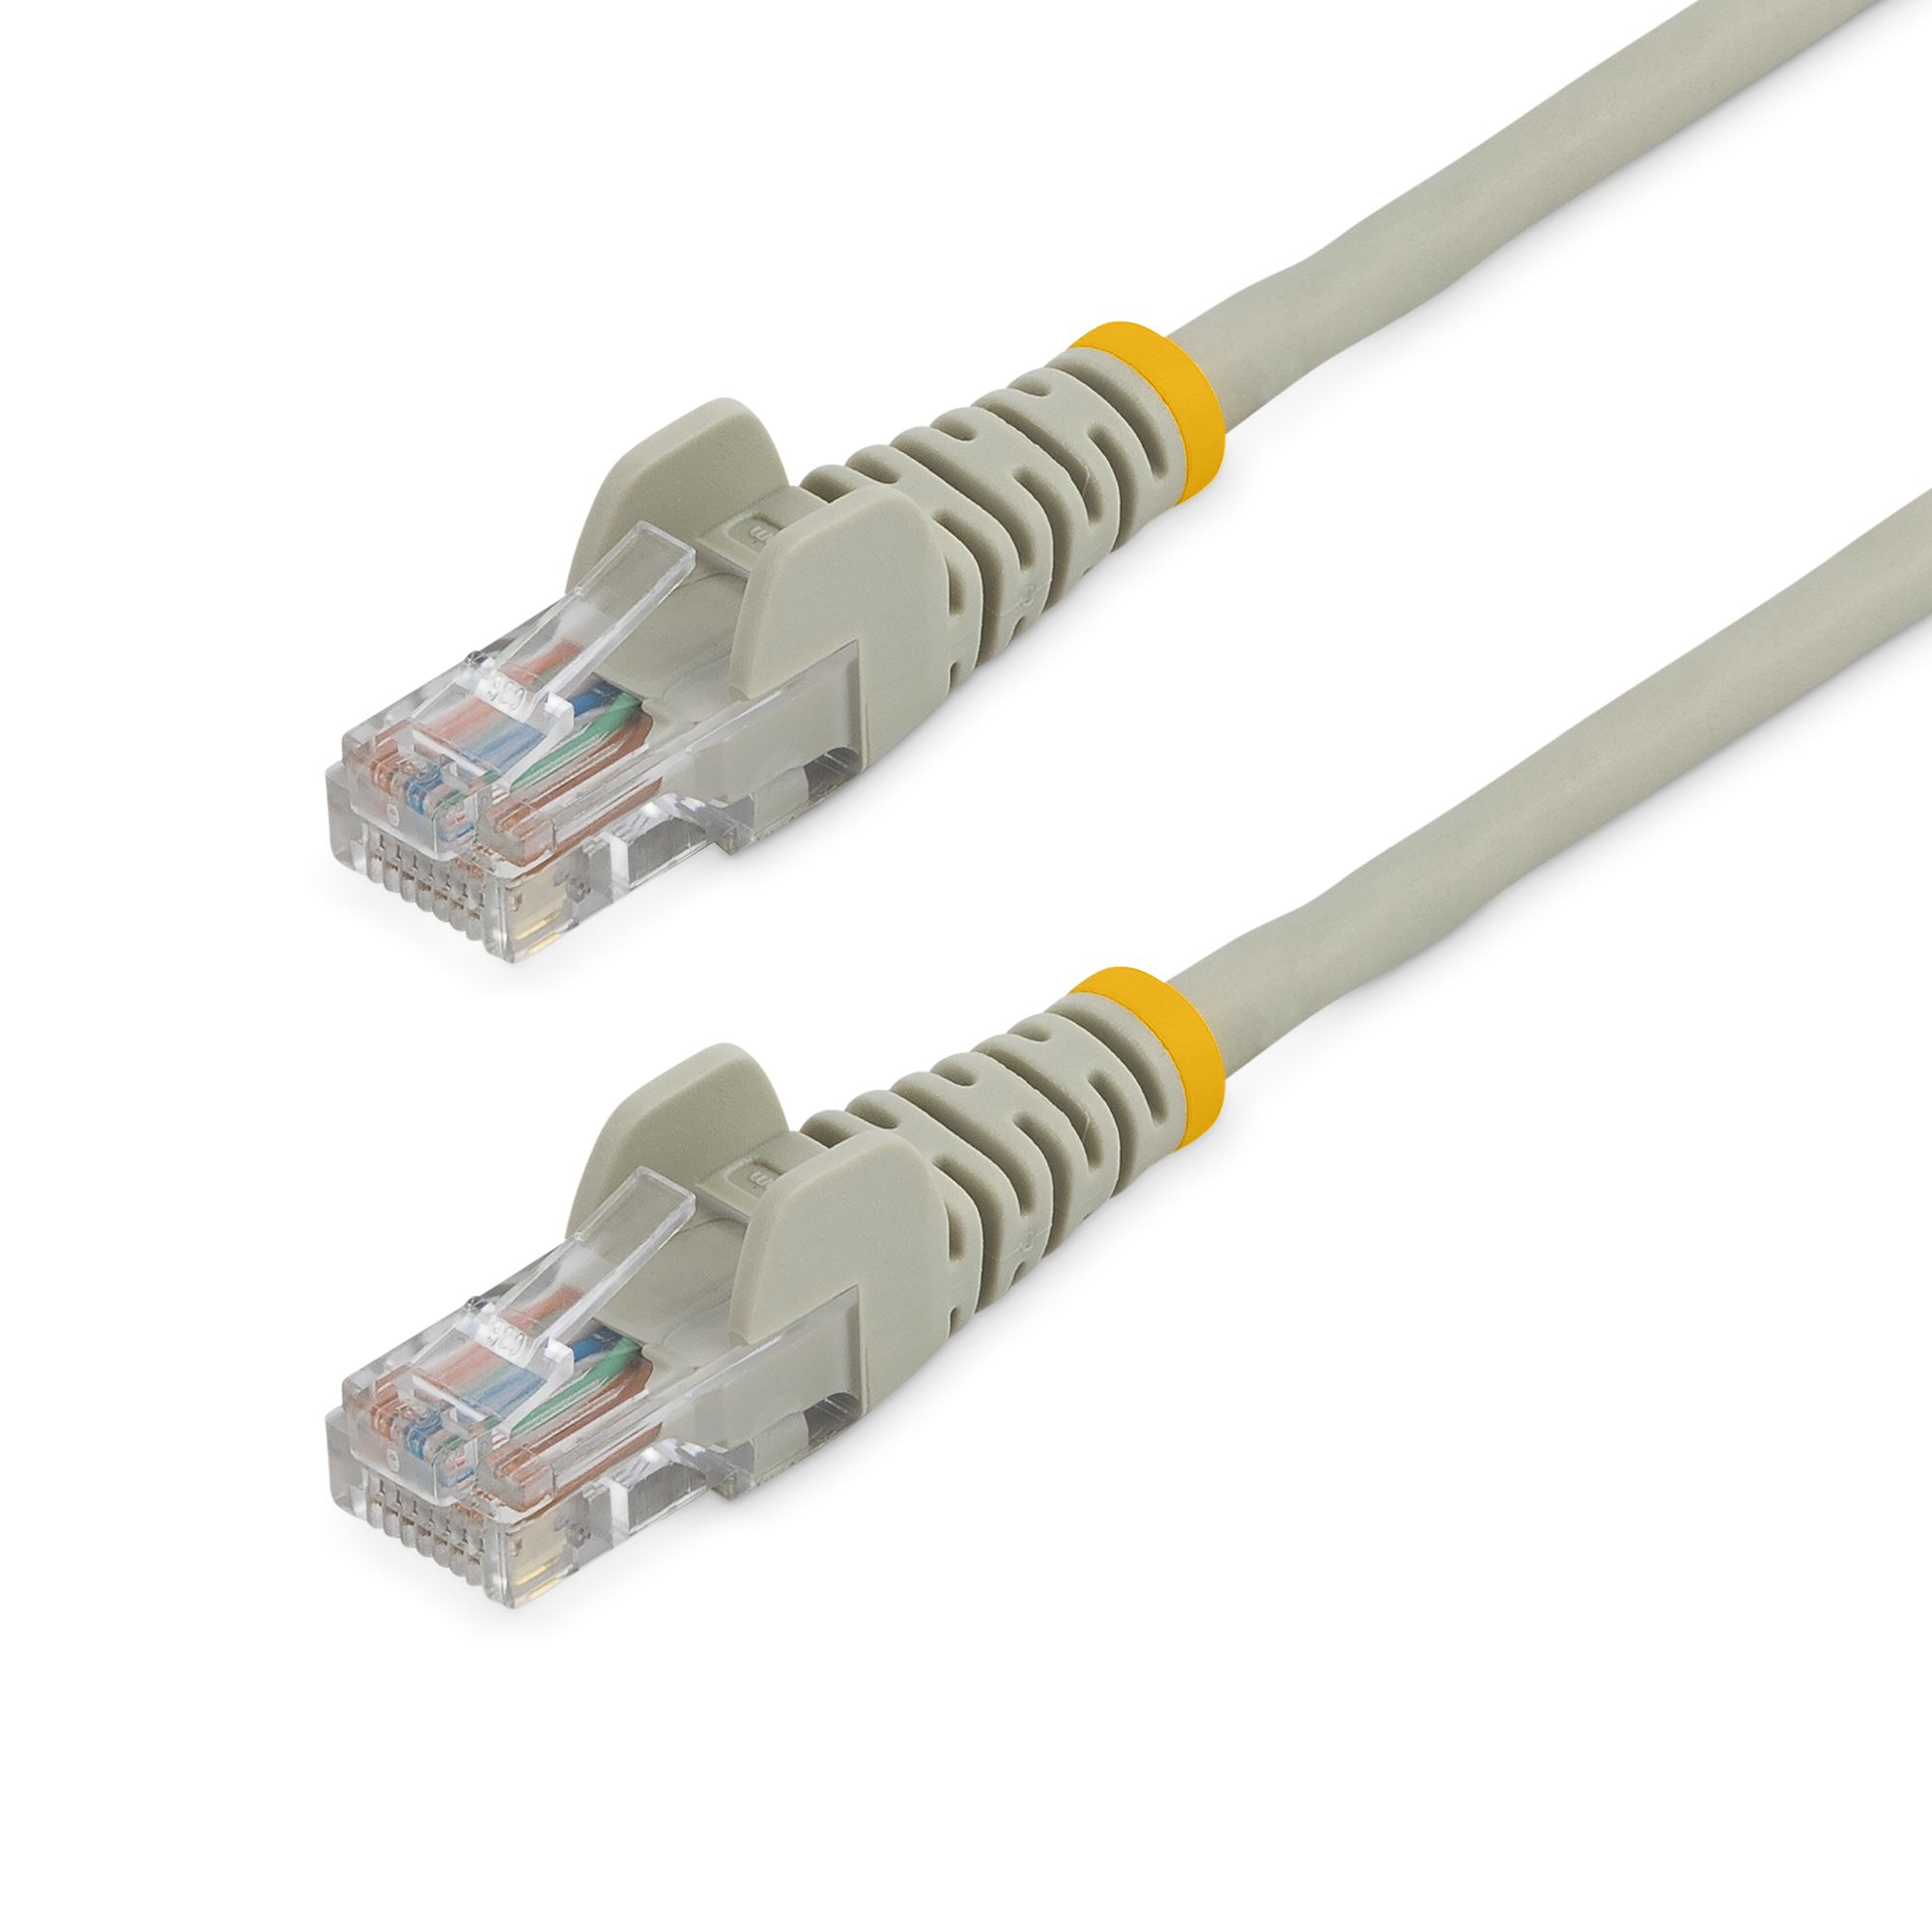 zij is Associëren Buitengewoon StarTech.com Cat5e Ethernet netwerkkabel met snagless RJ45 connectors UTP  kabel 0,5m grijs (45PAT50CMGR) kopen » Centralpoint